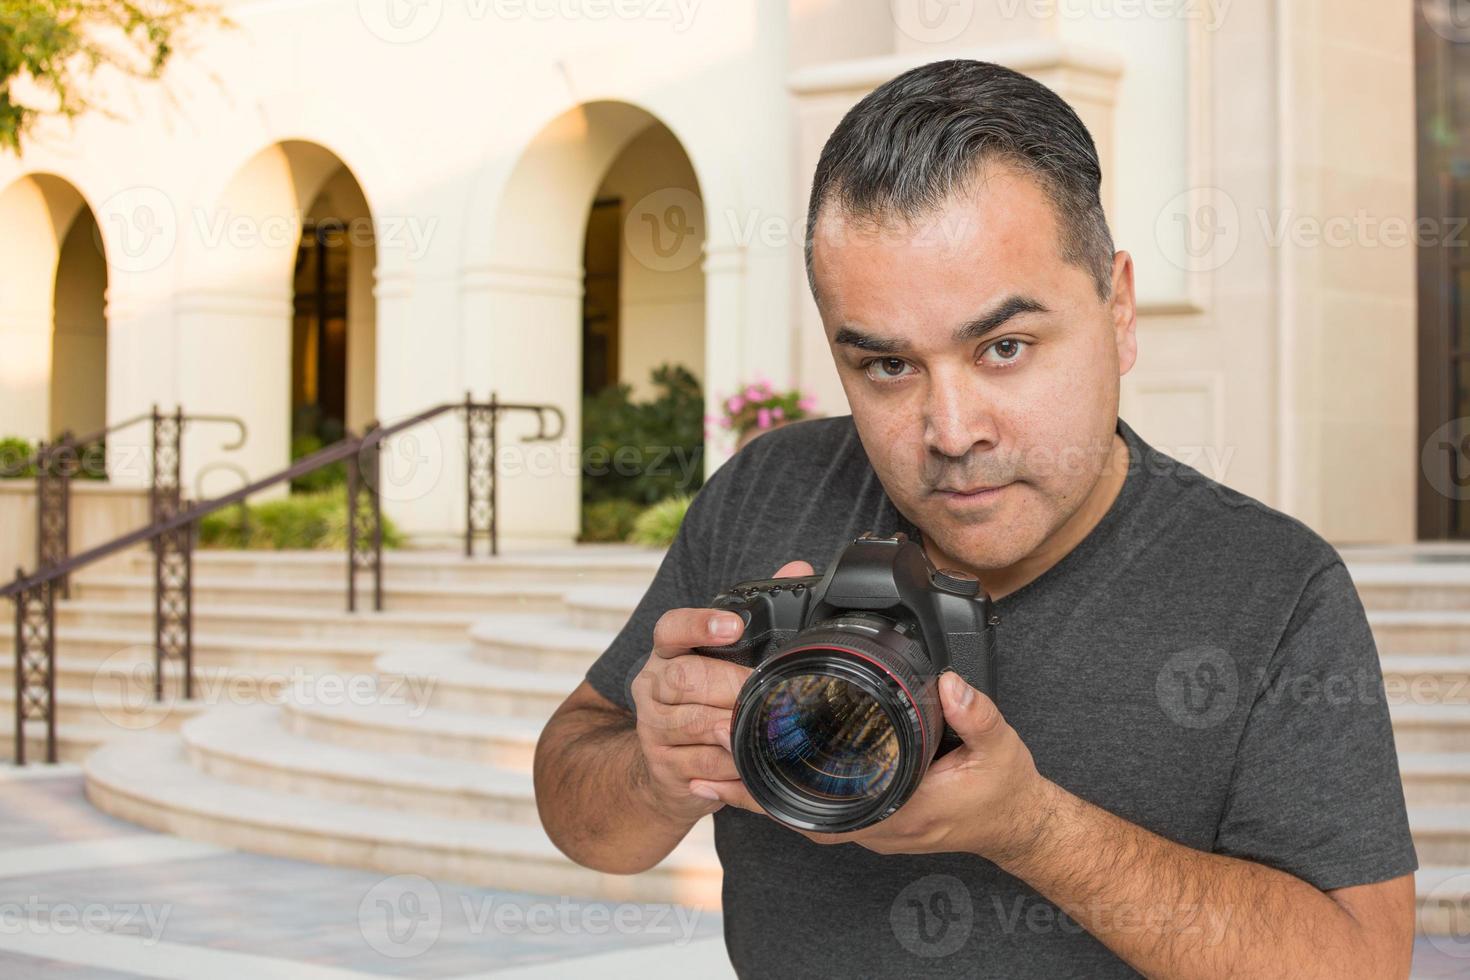 hispanischer junger männlicher fotograf mit dslr-kamera im freien foto